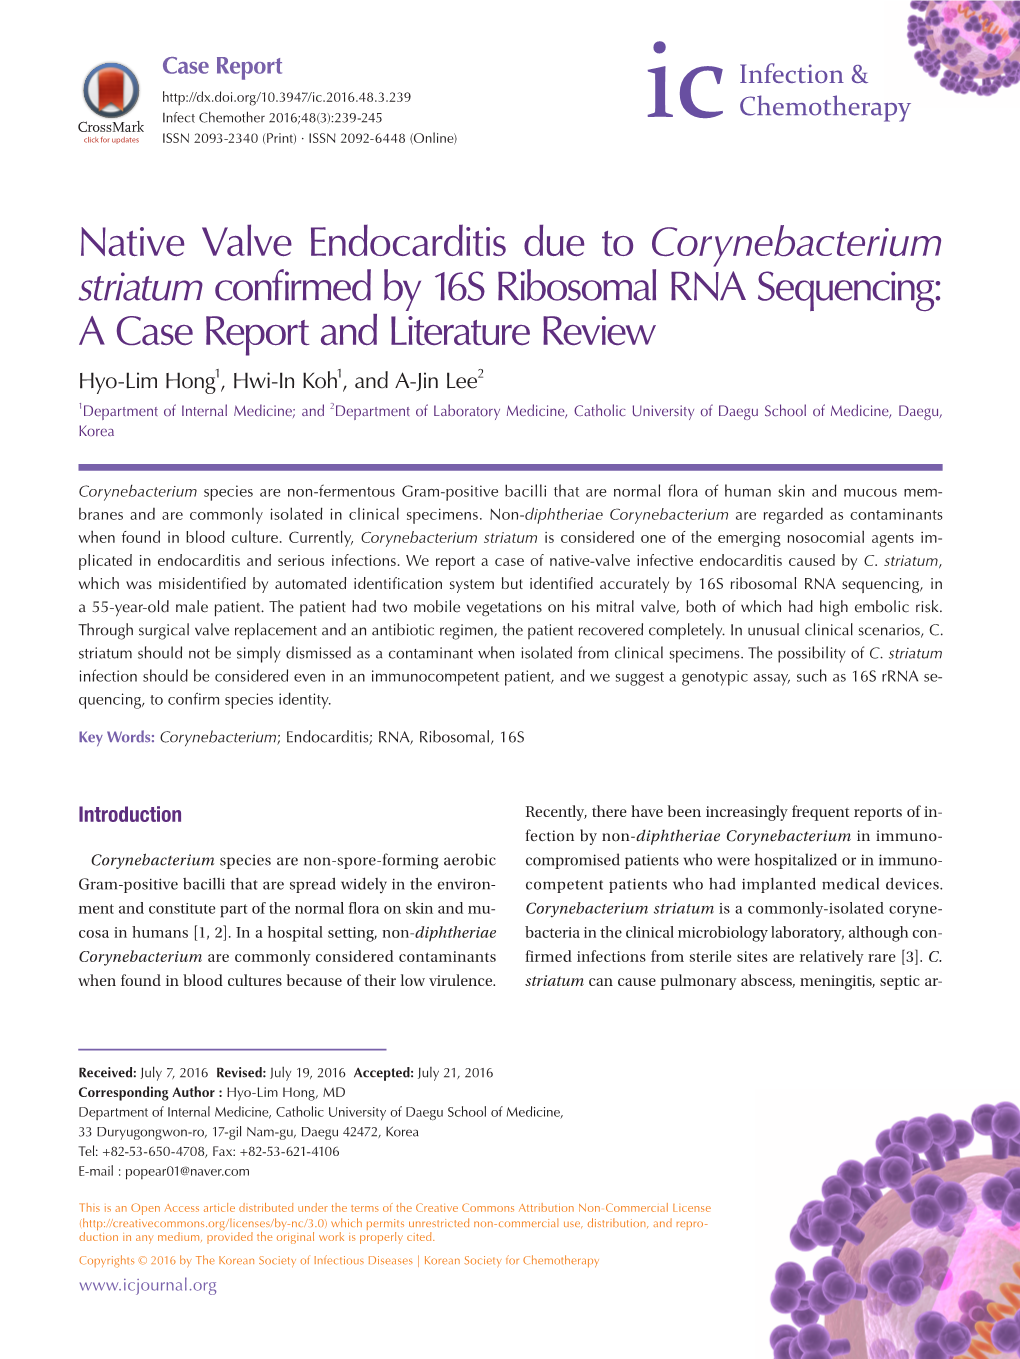 Native Valve Endocarditis Due to Corynebacterium Striatum